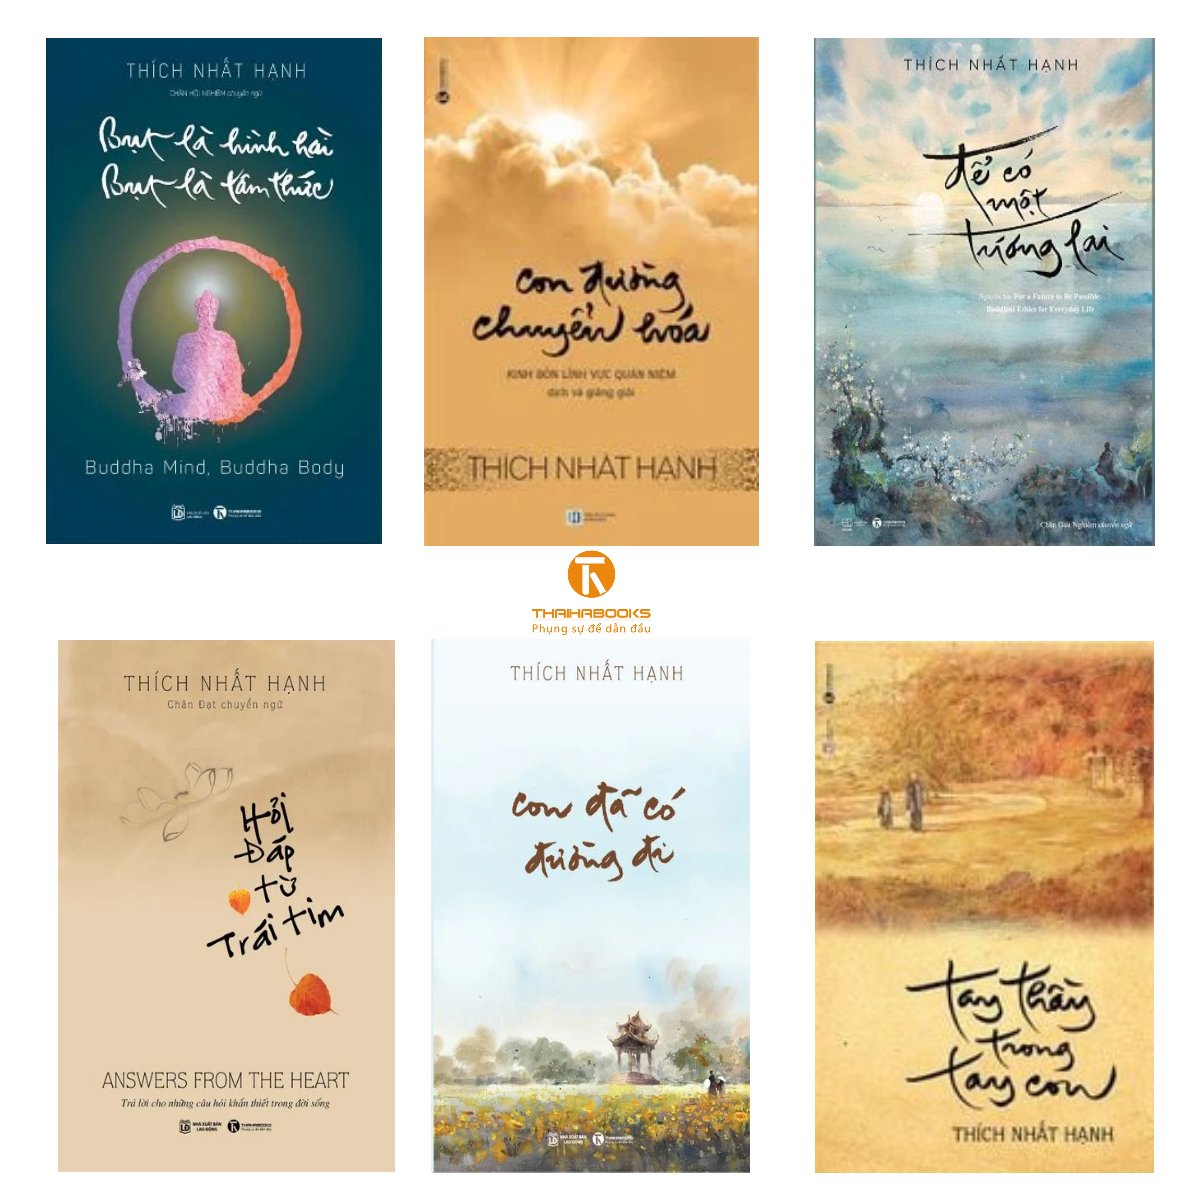 Sách - Trọn bộ sách của Thiền sư Thích Nhất Hạnh (25 cuốn) - Thái Hà Books